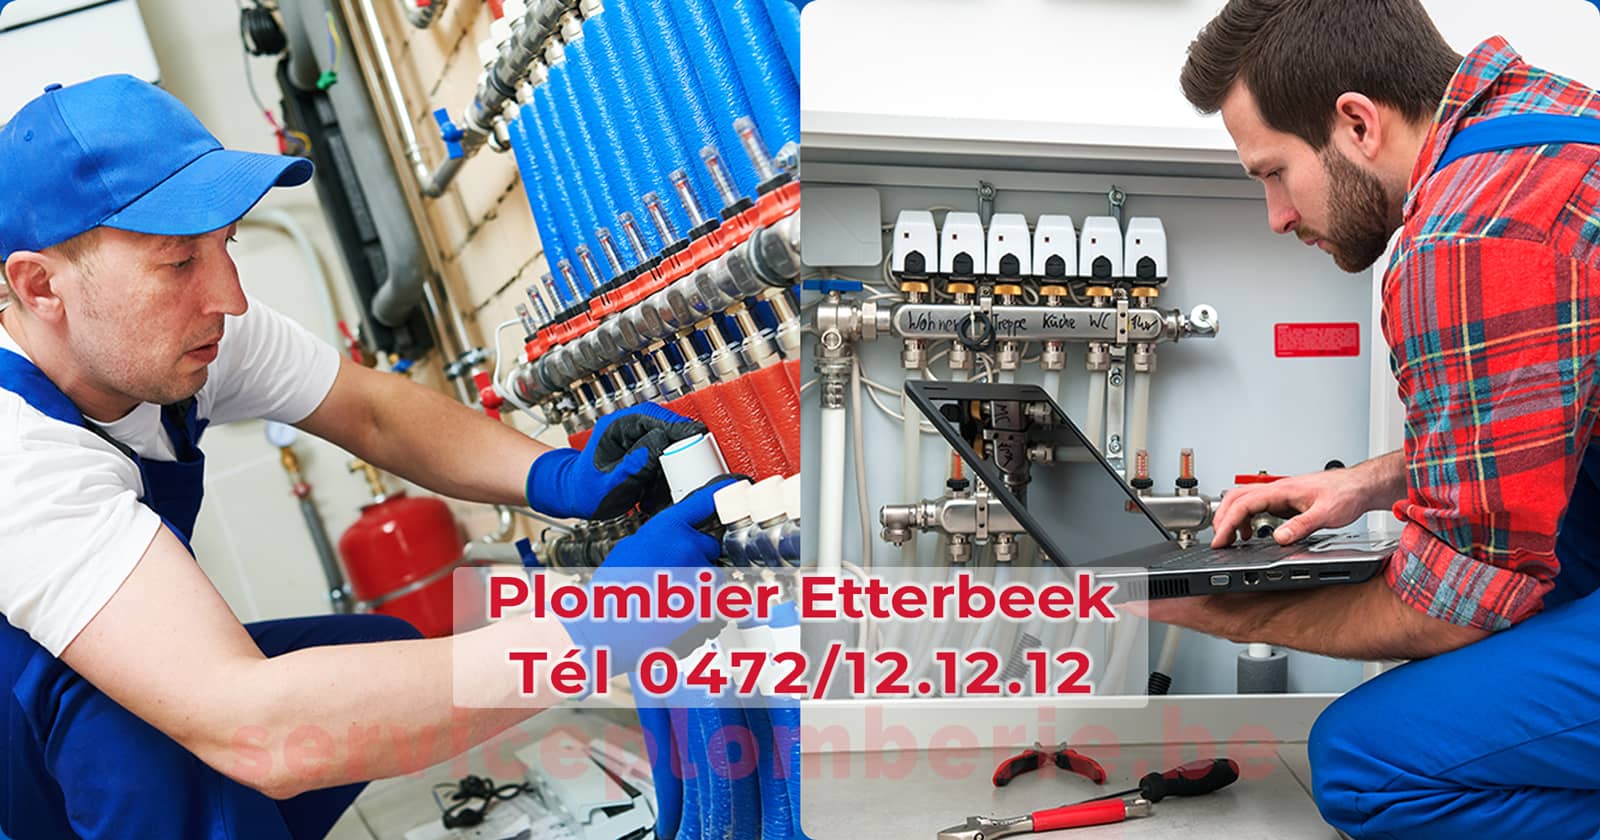 Plombier Etterbeek Agréé Professionnel Service Plomberie Tél 0472/12.12.12